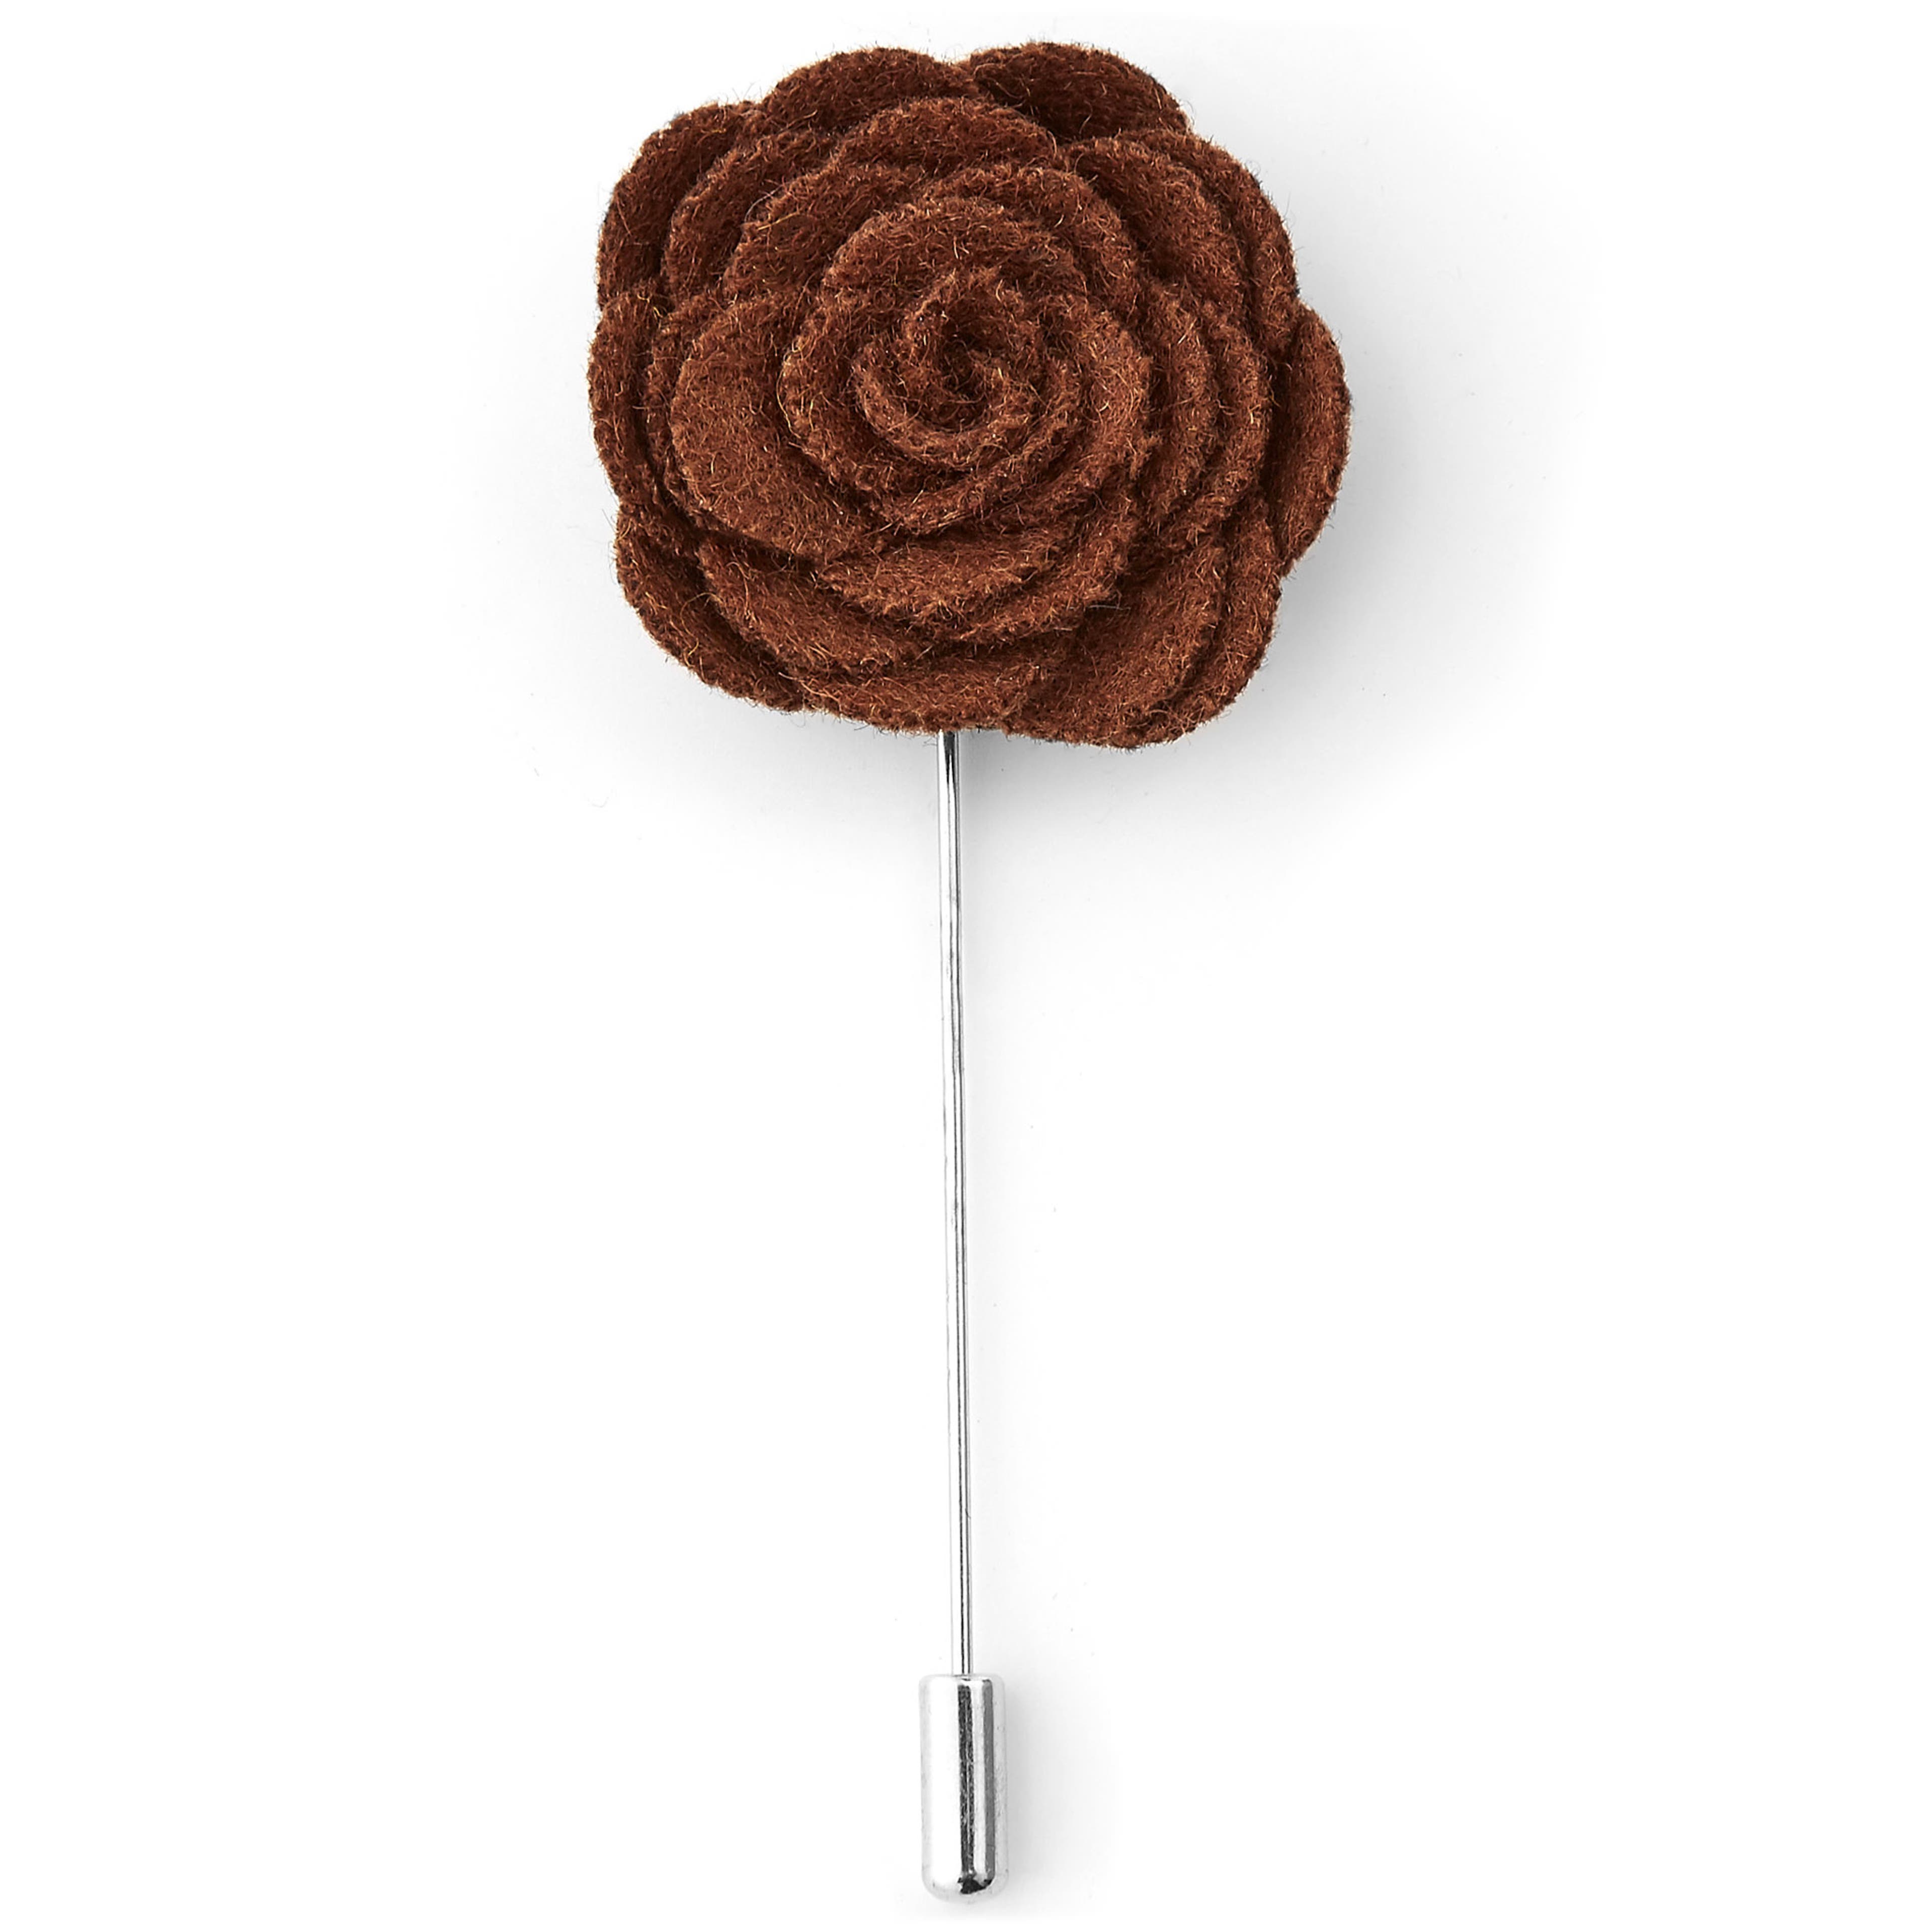 Chocolate Brown Rose Lapel Pin